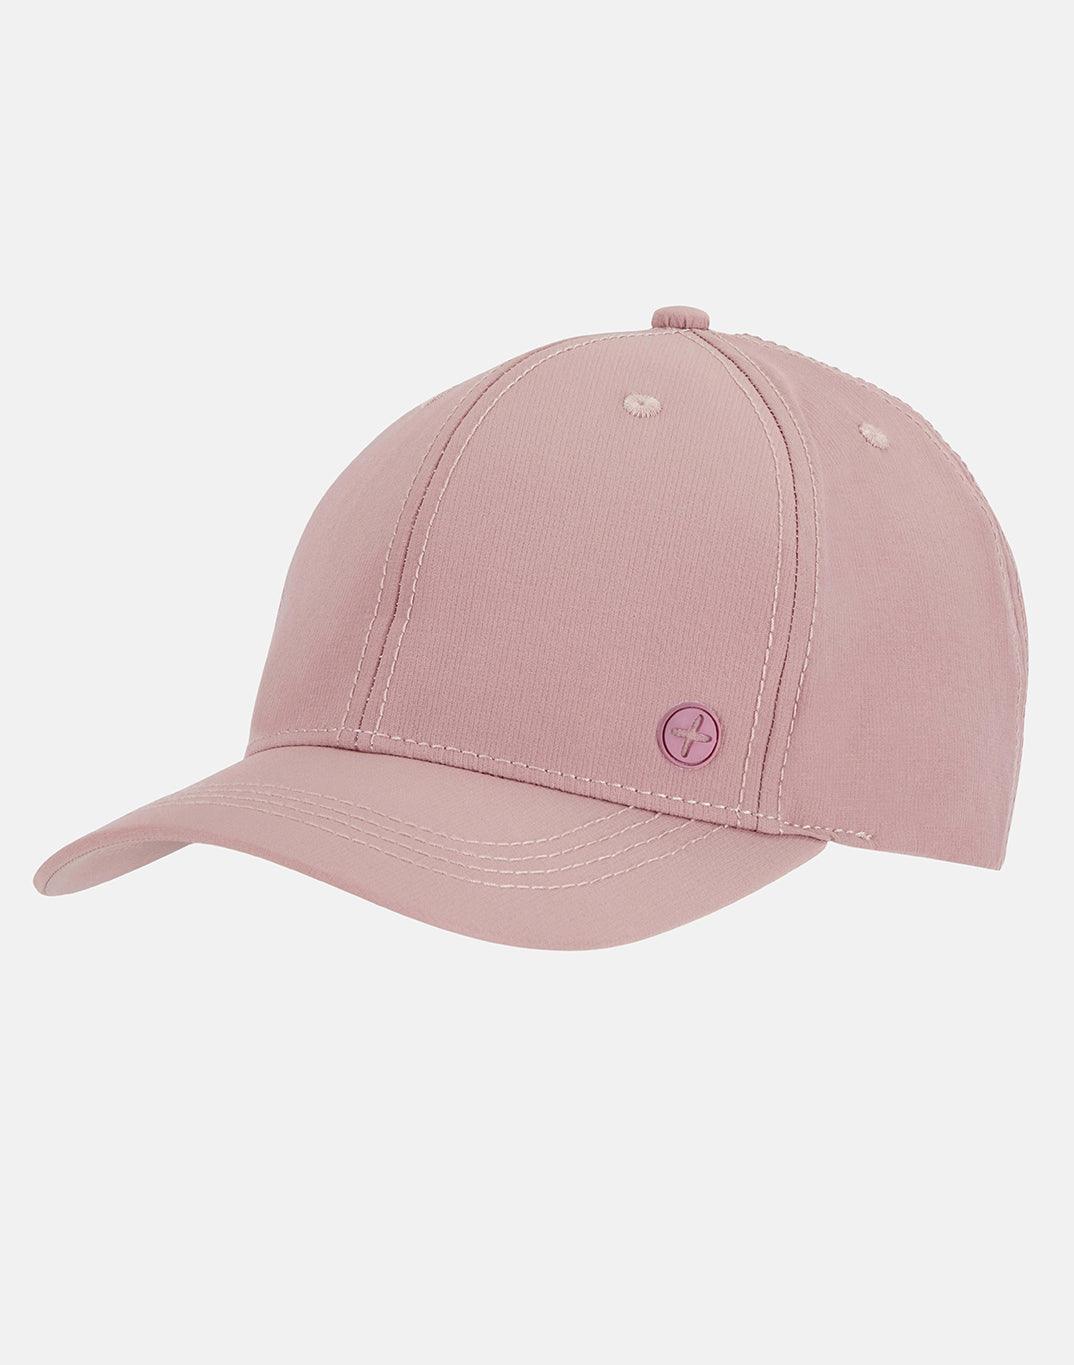 No Shade Cap In Dusty Pink - Headwear - Windsorbauders IE